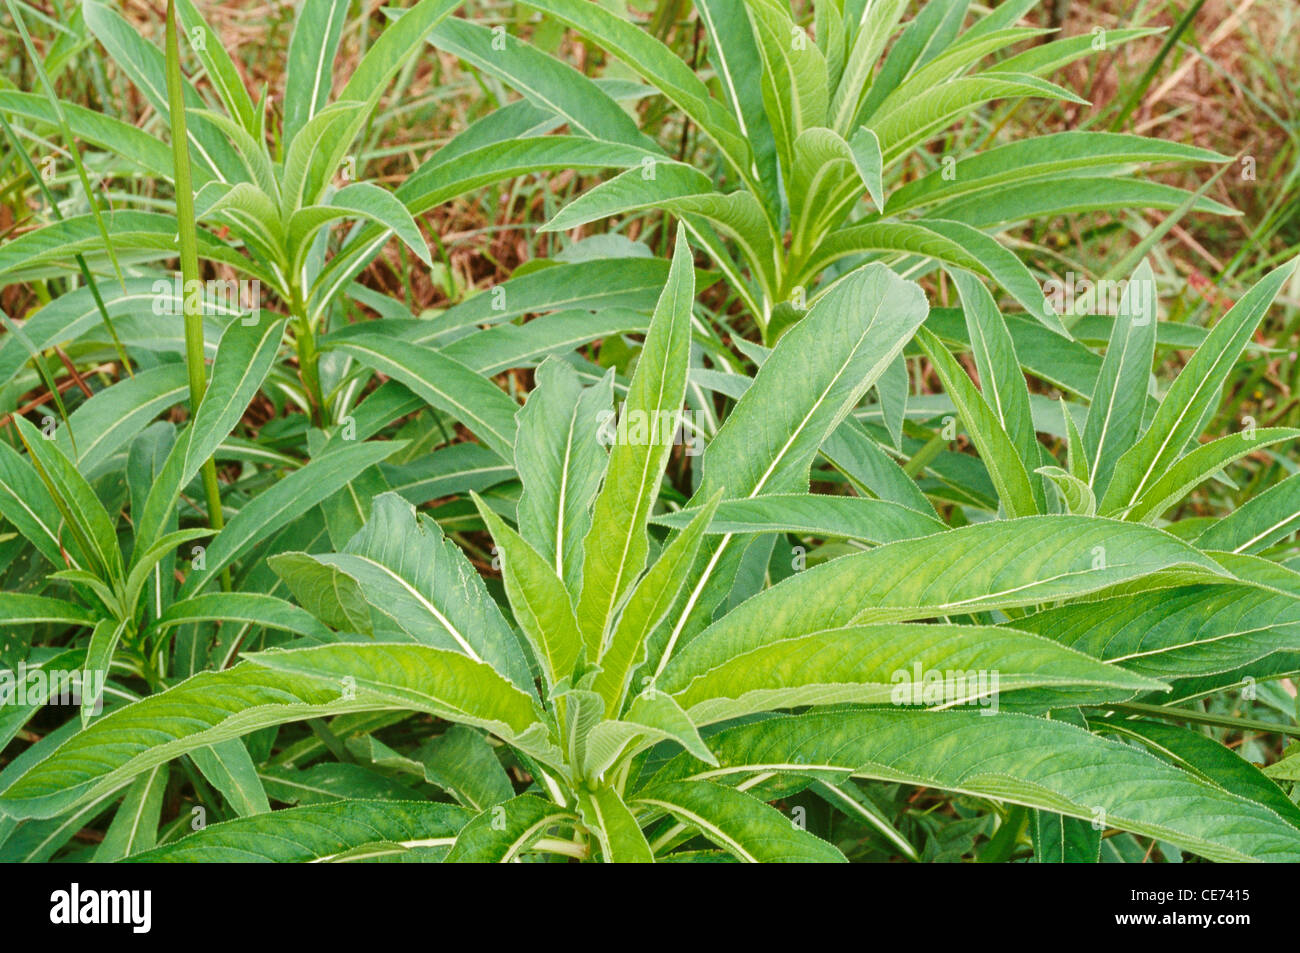 Lobelia nicotianifolia ; rothexschultes lobeliaceae herbacée produit de la médecine ayurvédique ; inde ; asie Banque D'Images